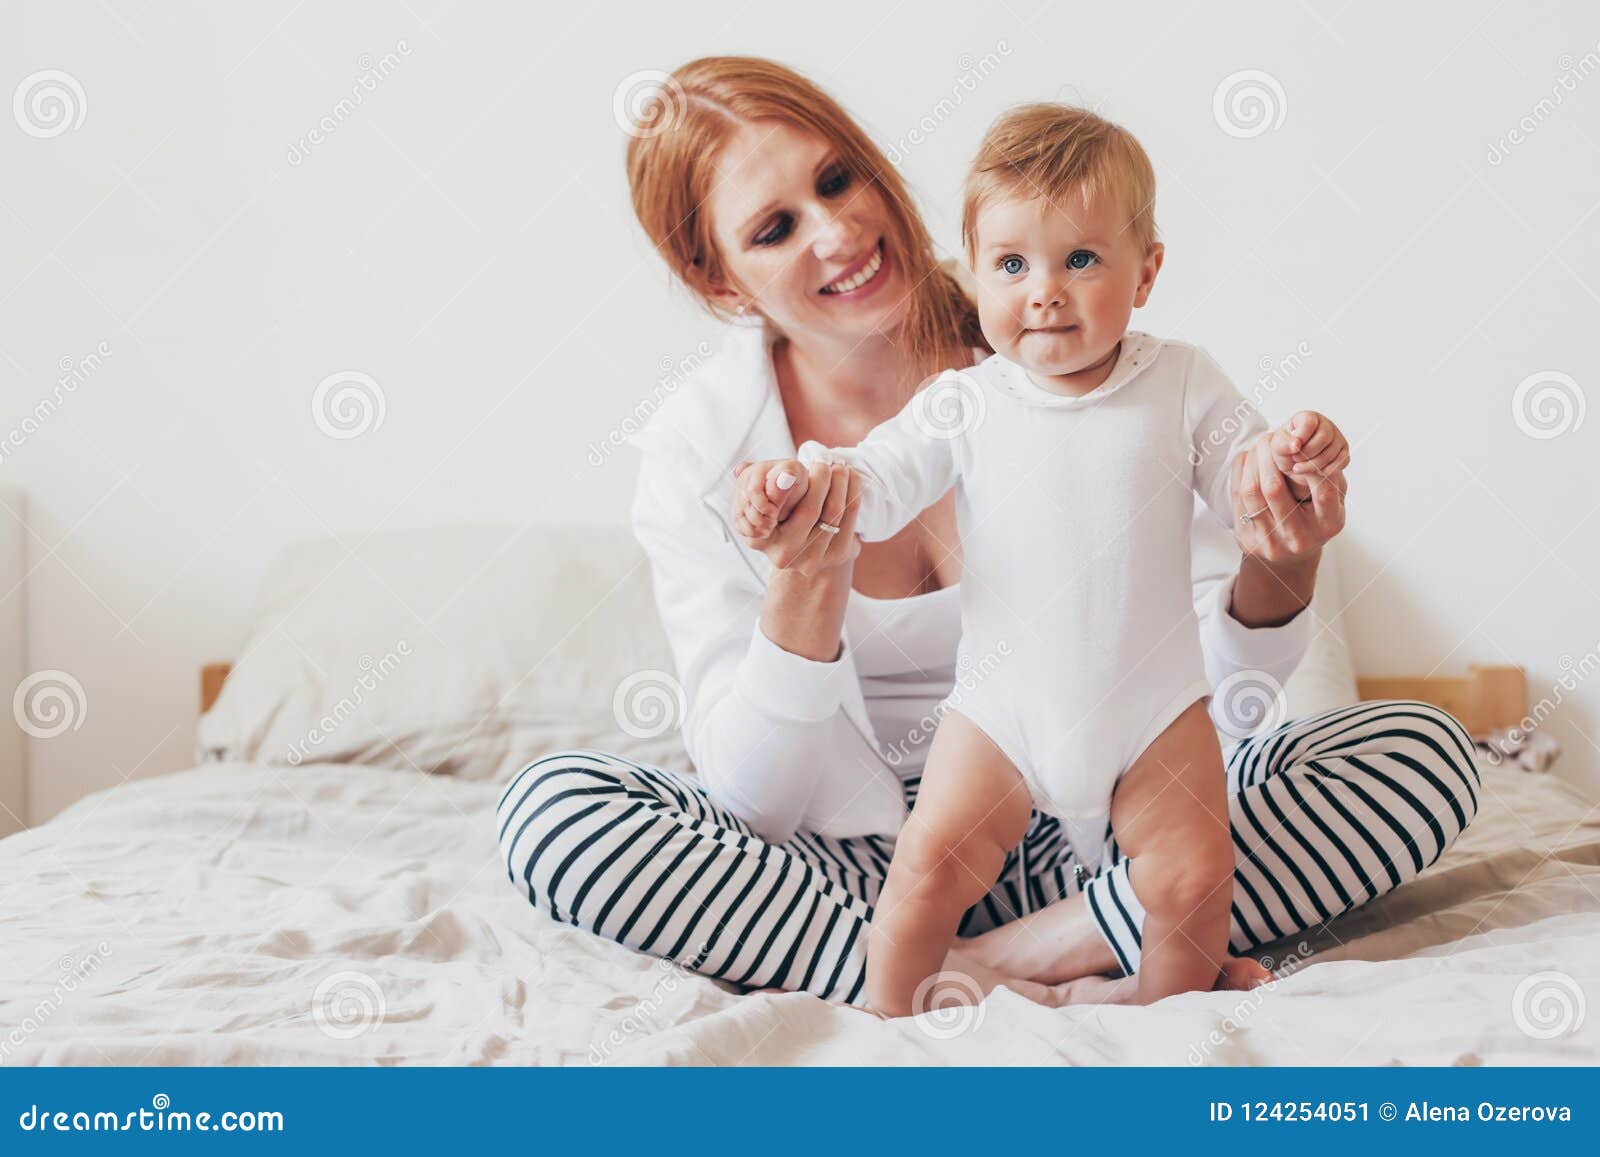 Jeune Maman Avec Son Bébé De 8 Mois Photo stock - Image du intérieur,  famille: 124253914